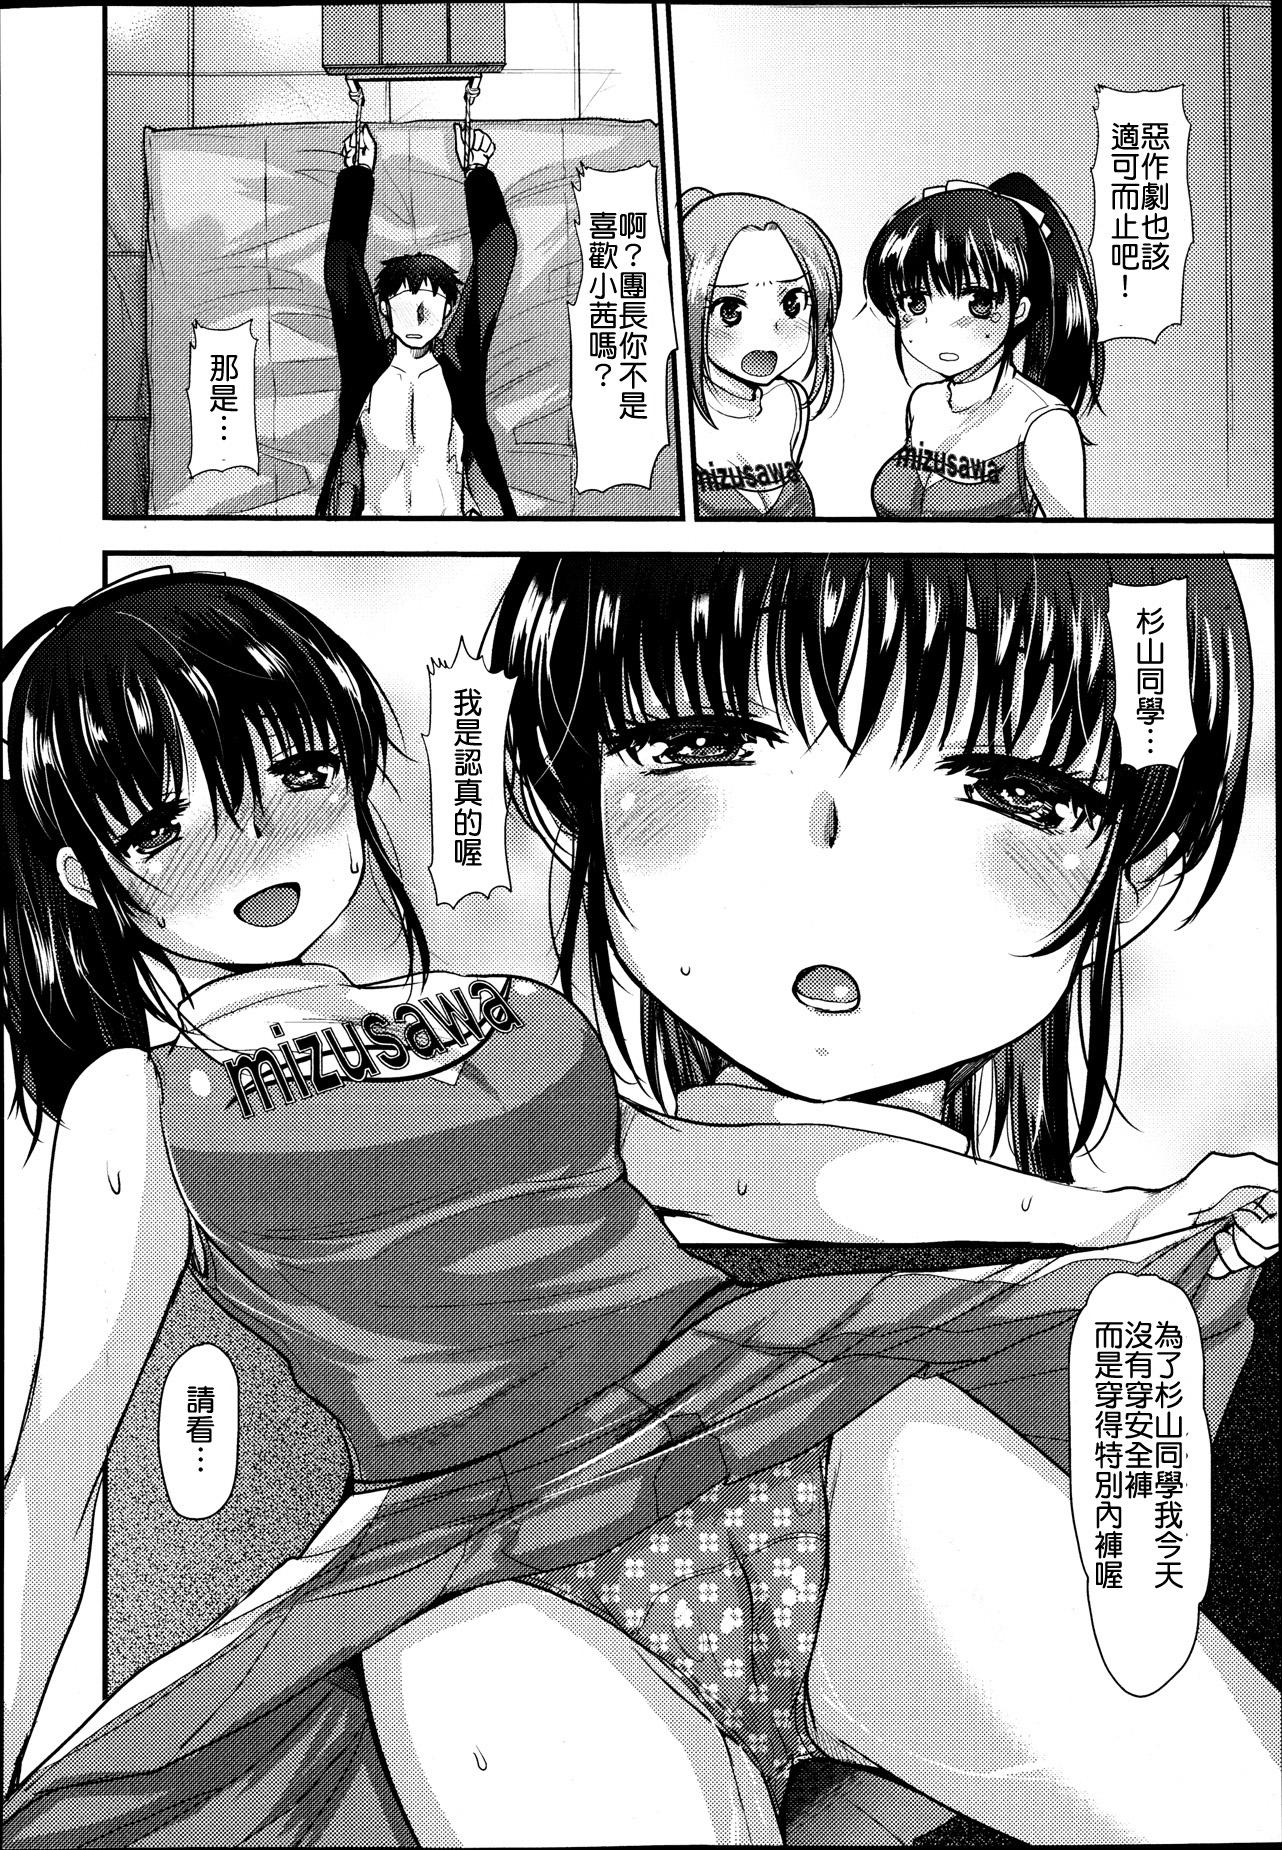 Sex Toys Watashi ja dame desu ka!? Peituda - Page 4